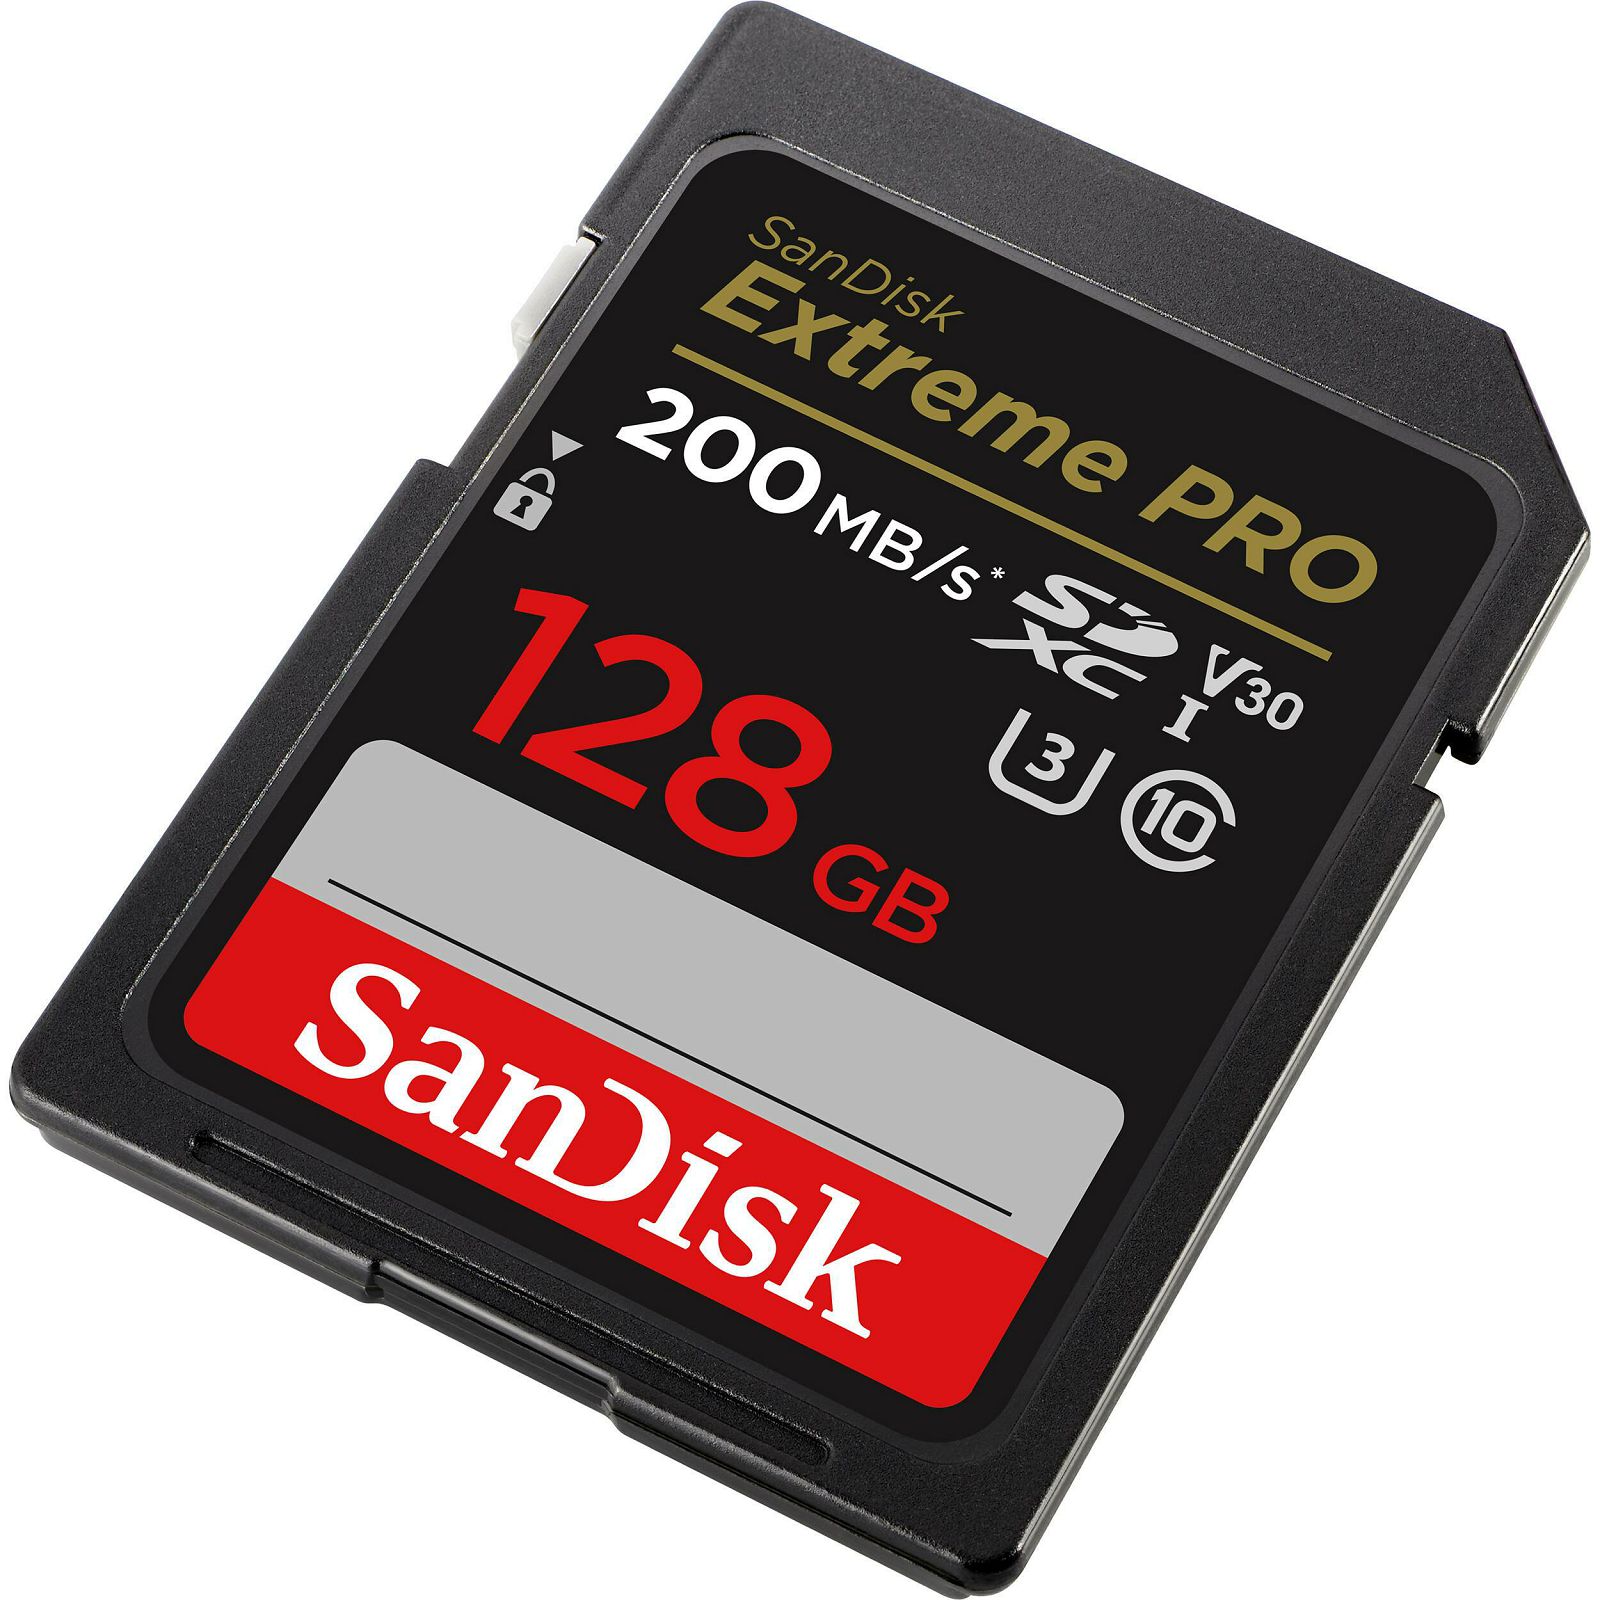 SanDisk SD 128GB 200MB/s 90MB/s Extreme Pro SDXC UHS-I Class 10 V30 U3 Memorijska kartica (SDSDXXD-128G-GN4IN)